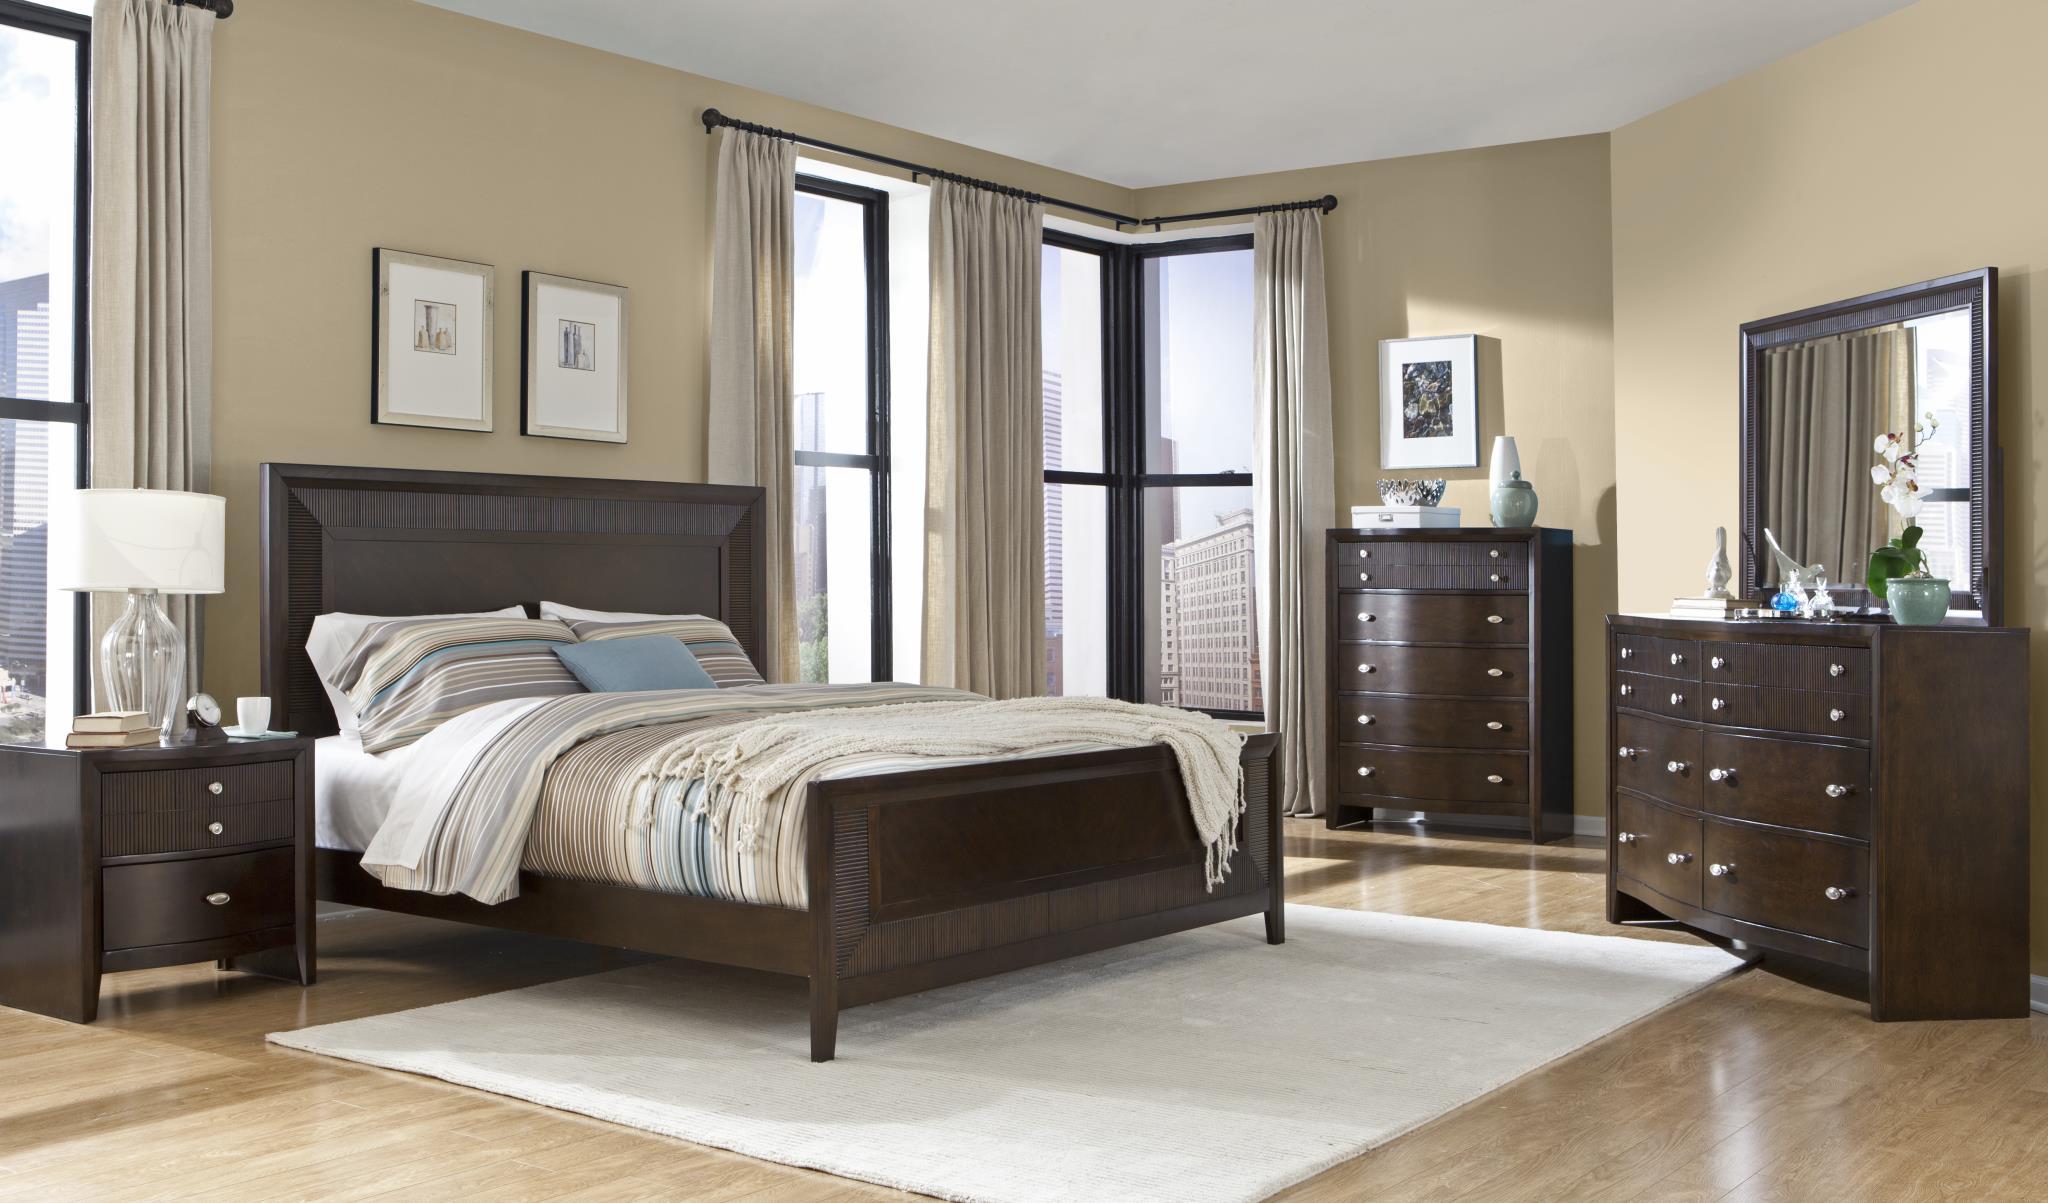 

    
MYCO Furniture EM3110Q Empire Espresso Finish Ribbed Wood Queen Panel Bedroom Set 4Pcs
